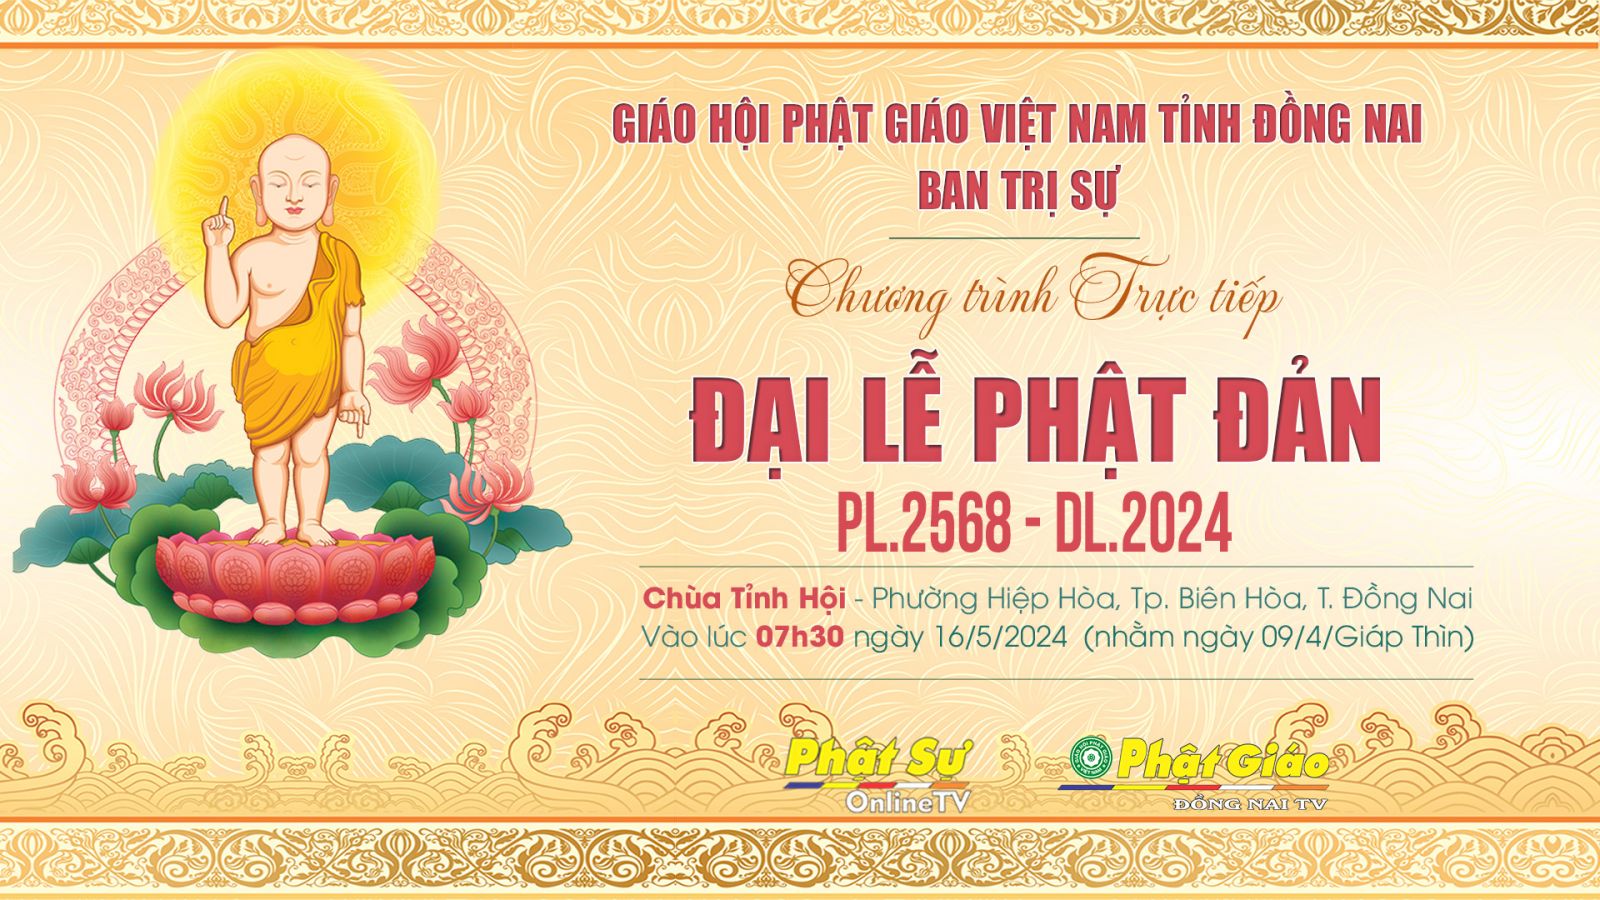 Trực tiếp: Trang nghiêm Đại lễ Phật đản PL.2568 - DL.2024 của Ban Trị sự GHPGVN tỉnh Đồng Nai